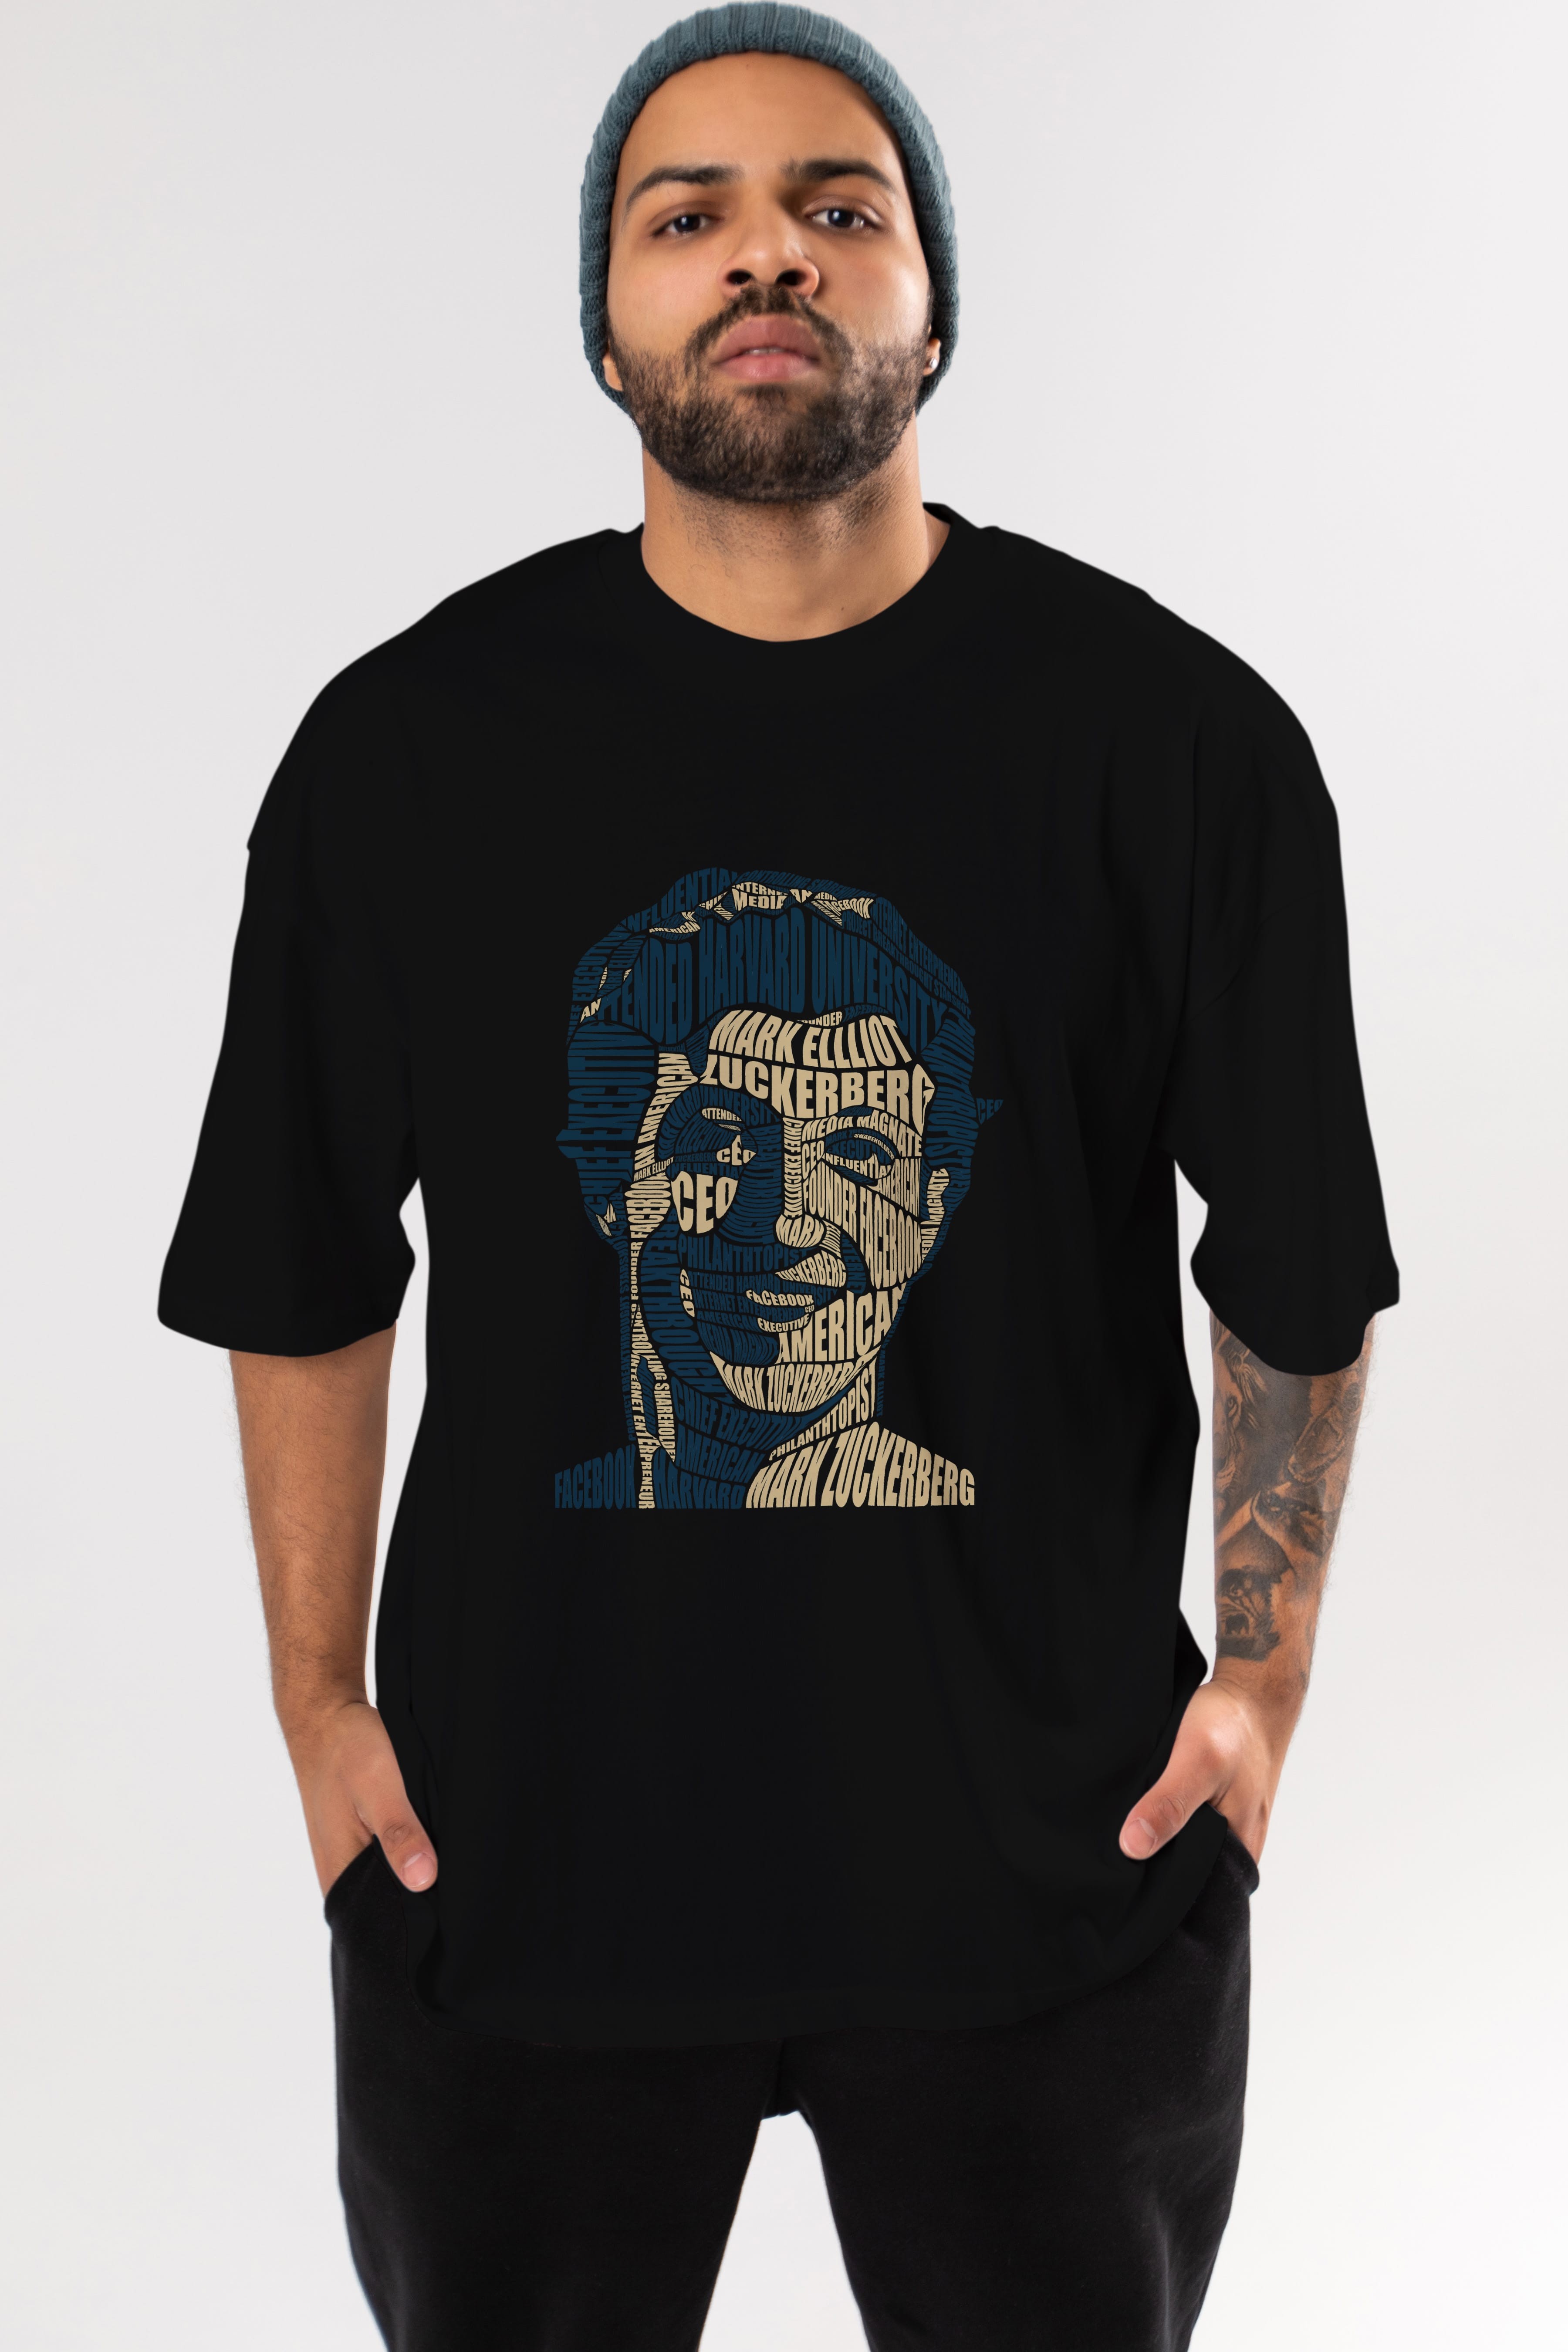 Mark Zuckerberg Calligram Ön Baskılı Oversize t-shirt %100 pamuk Erkek Kadın Unisex